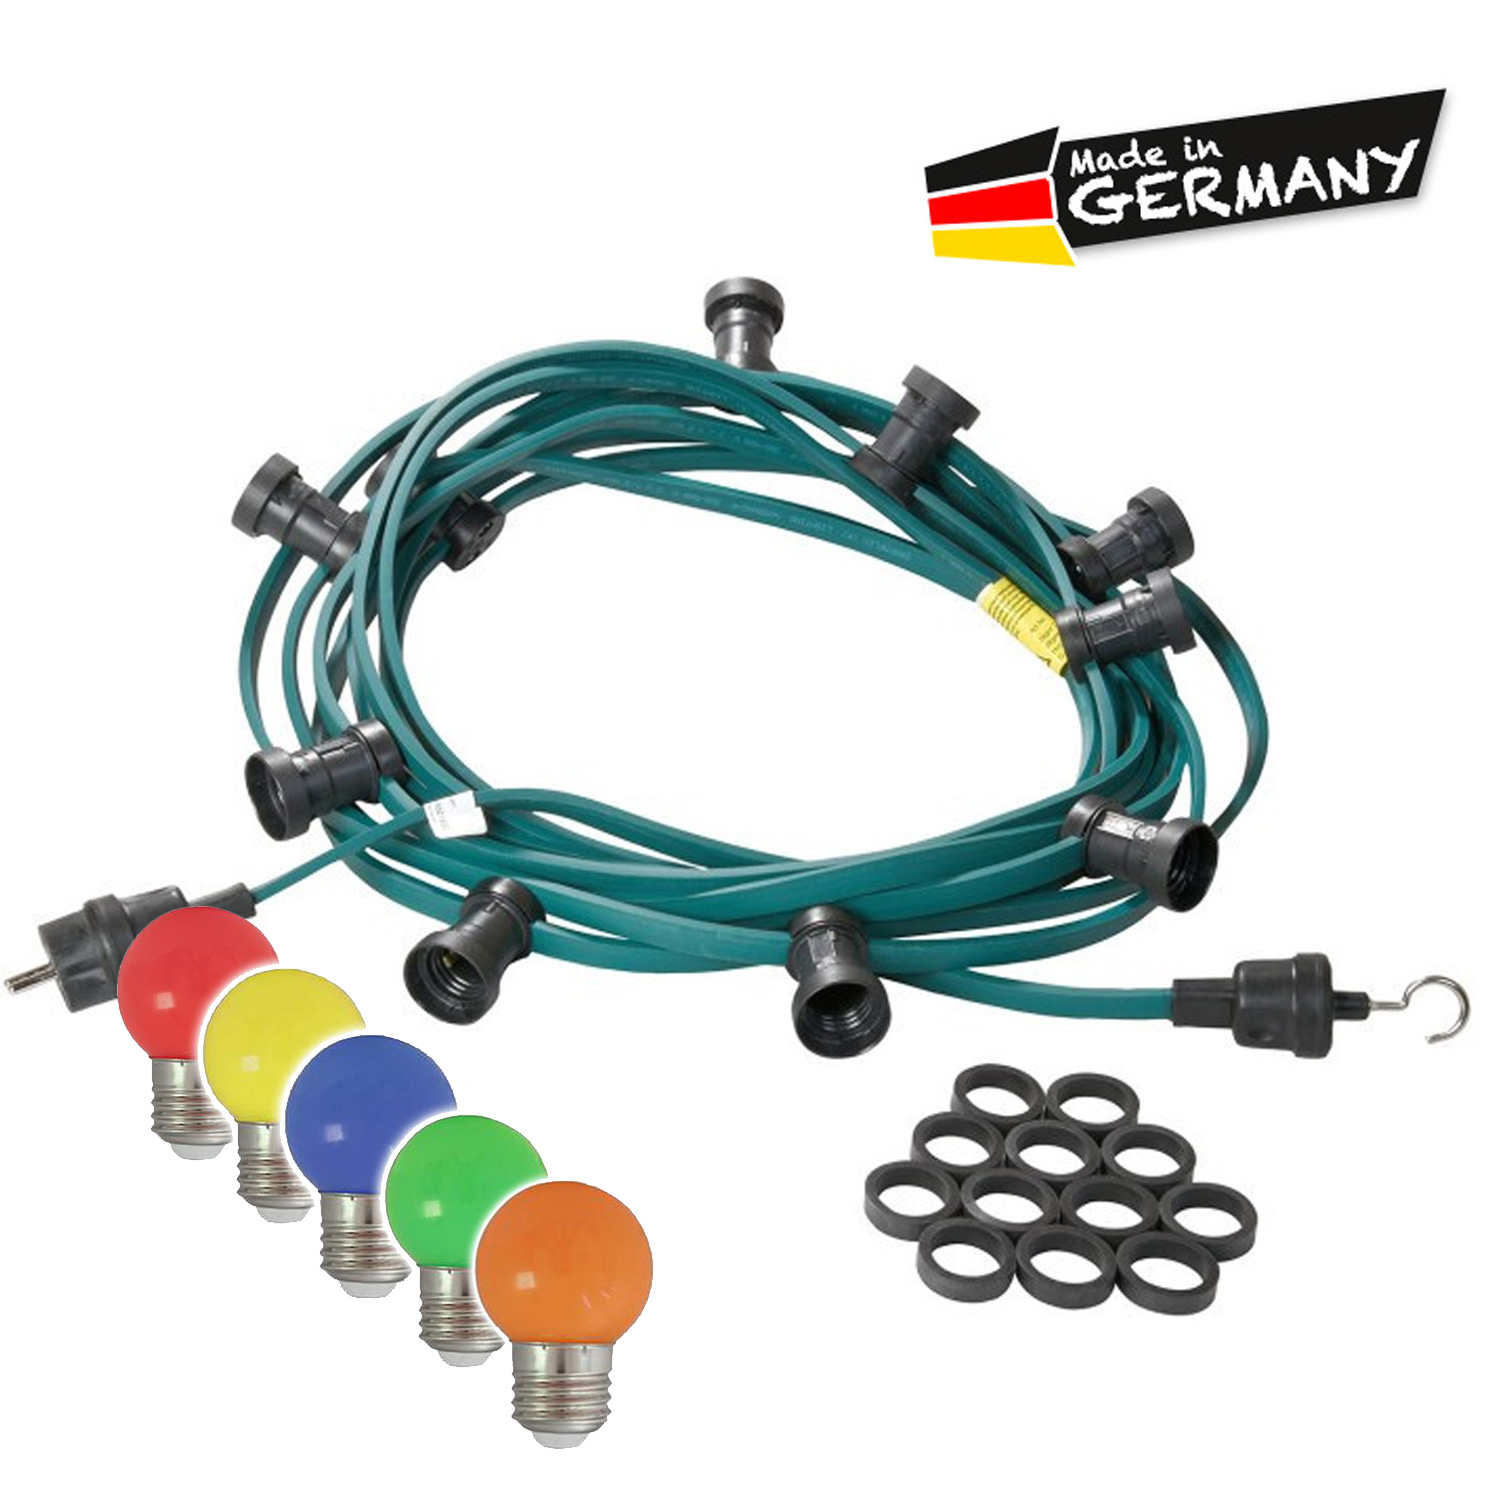 Illu-/Partylichterkette grün 50m - Außenlichterkette - Made in Germany - 50 x bunte LED Kugellampen